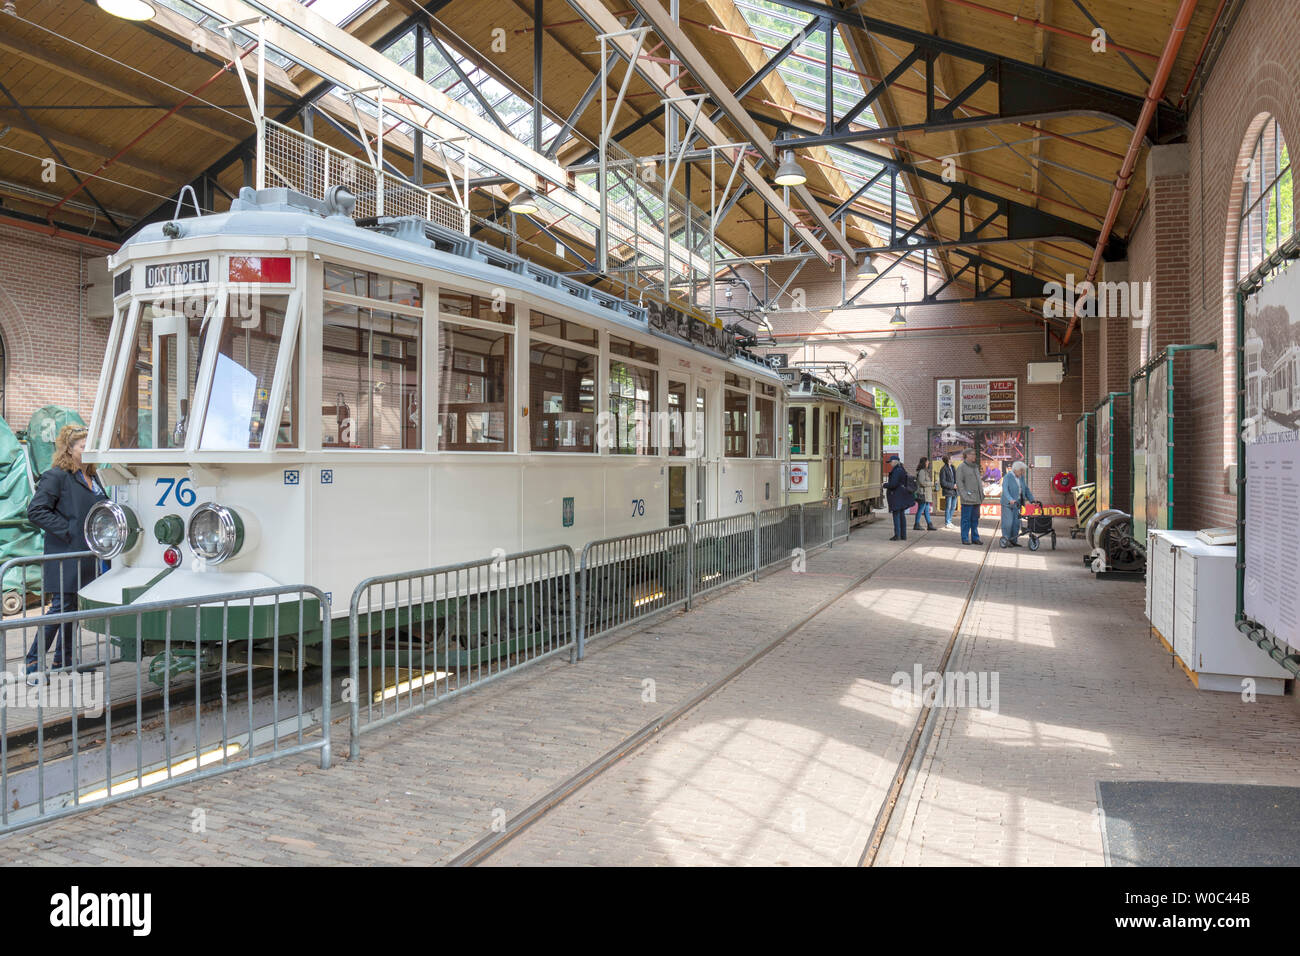 Les loisirs d'une station de tram à la Holland's Open Air Museum. Un beau jour, l'affichage de la culture, de l'architecture et des anciens Pays-Bas livelyhoods Banque D'Images